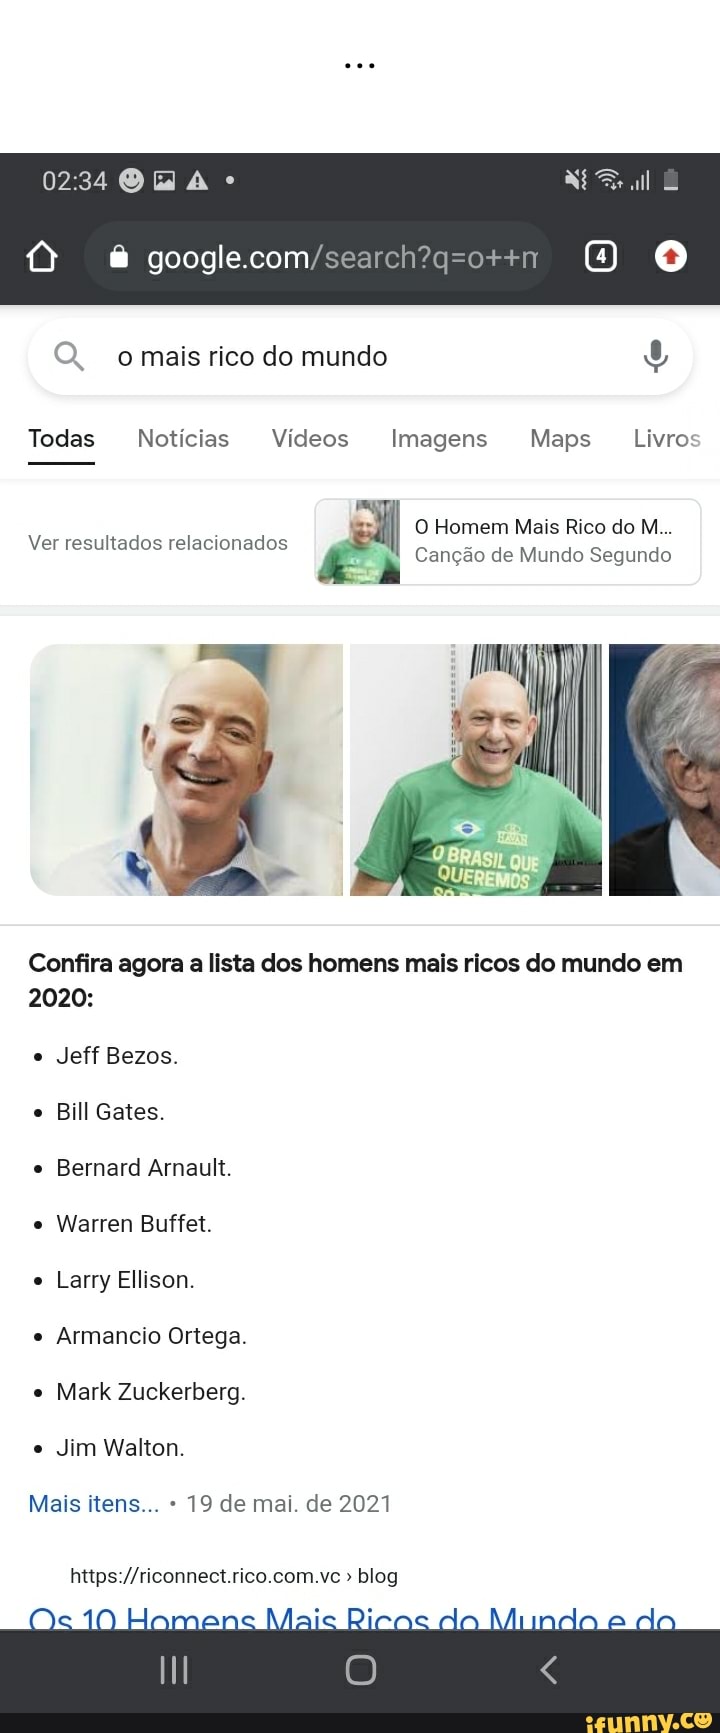 Os 10 homens mais ricos do mundo e do Brasil [2023] - Riconnect